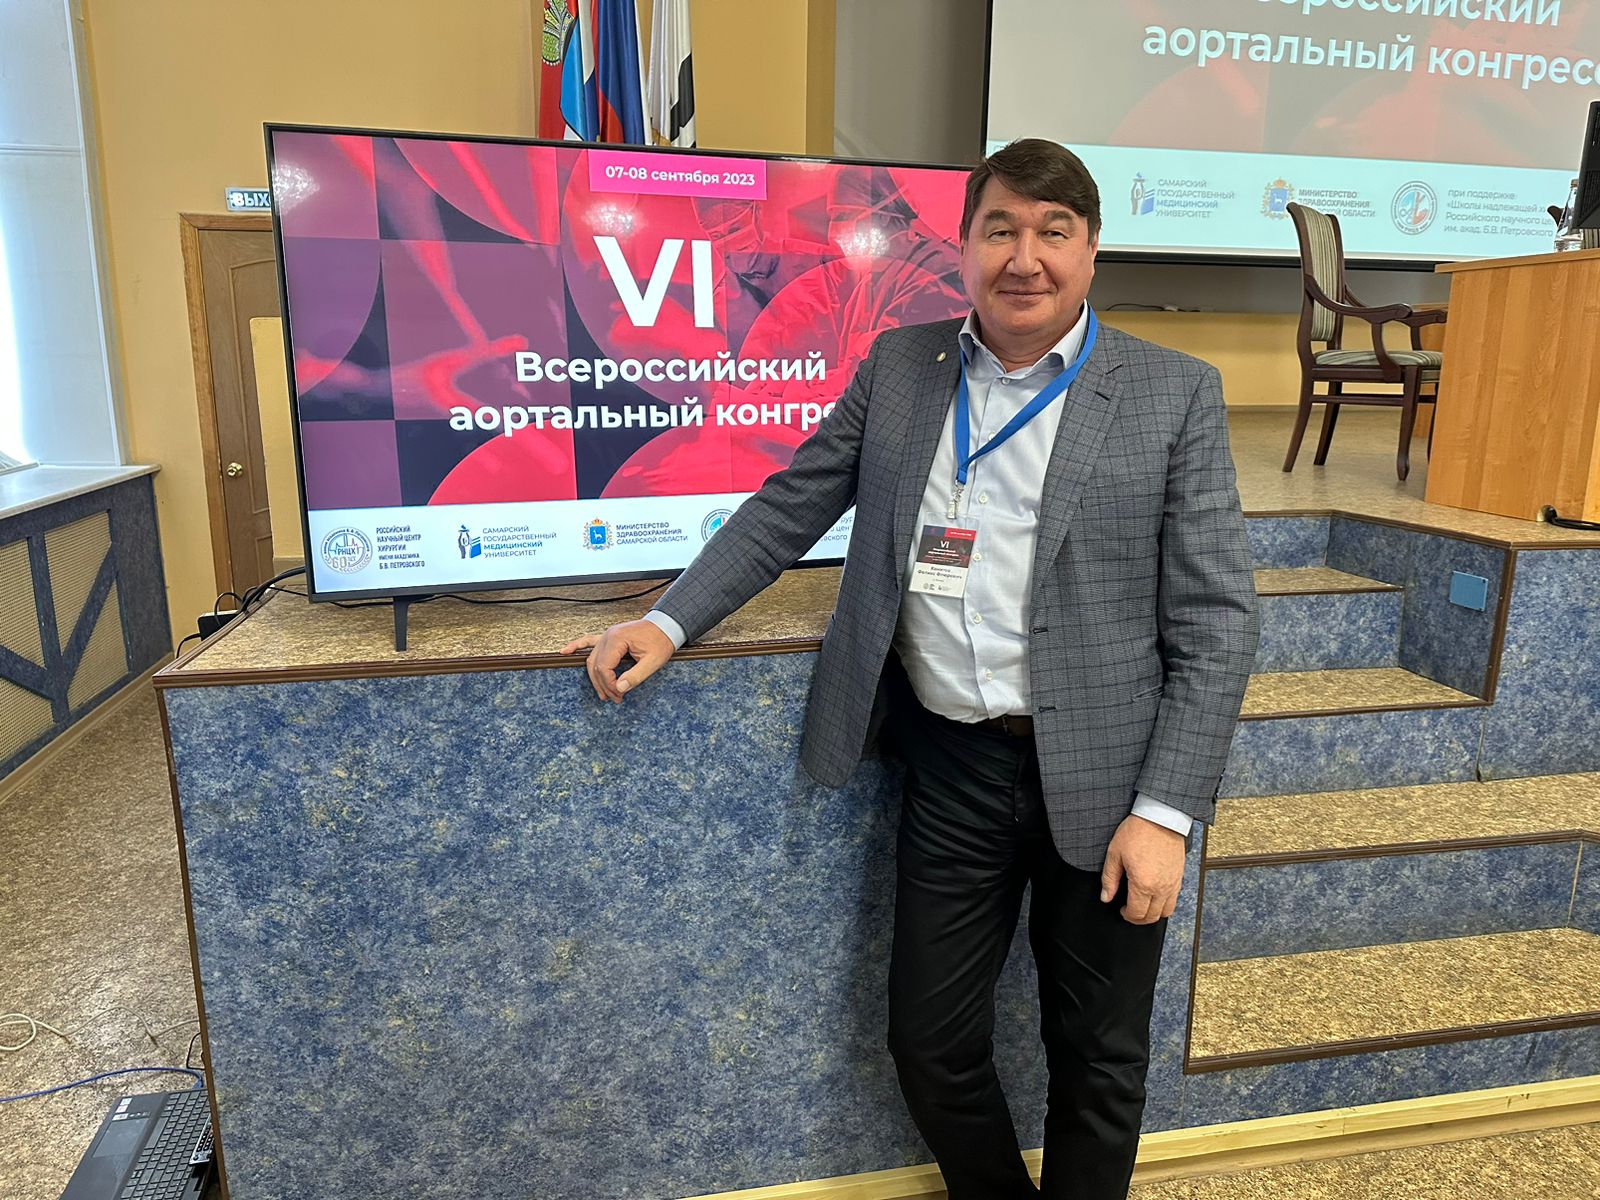 Специалист больницы Вересаева выступил с докладом на Всероссийском аортальном конгрессе